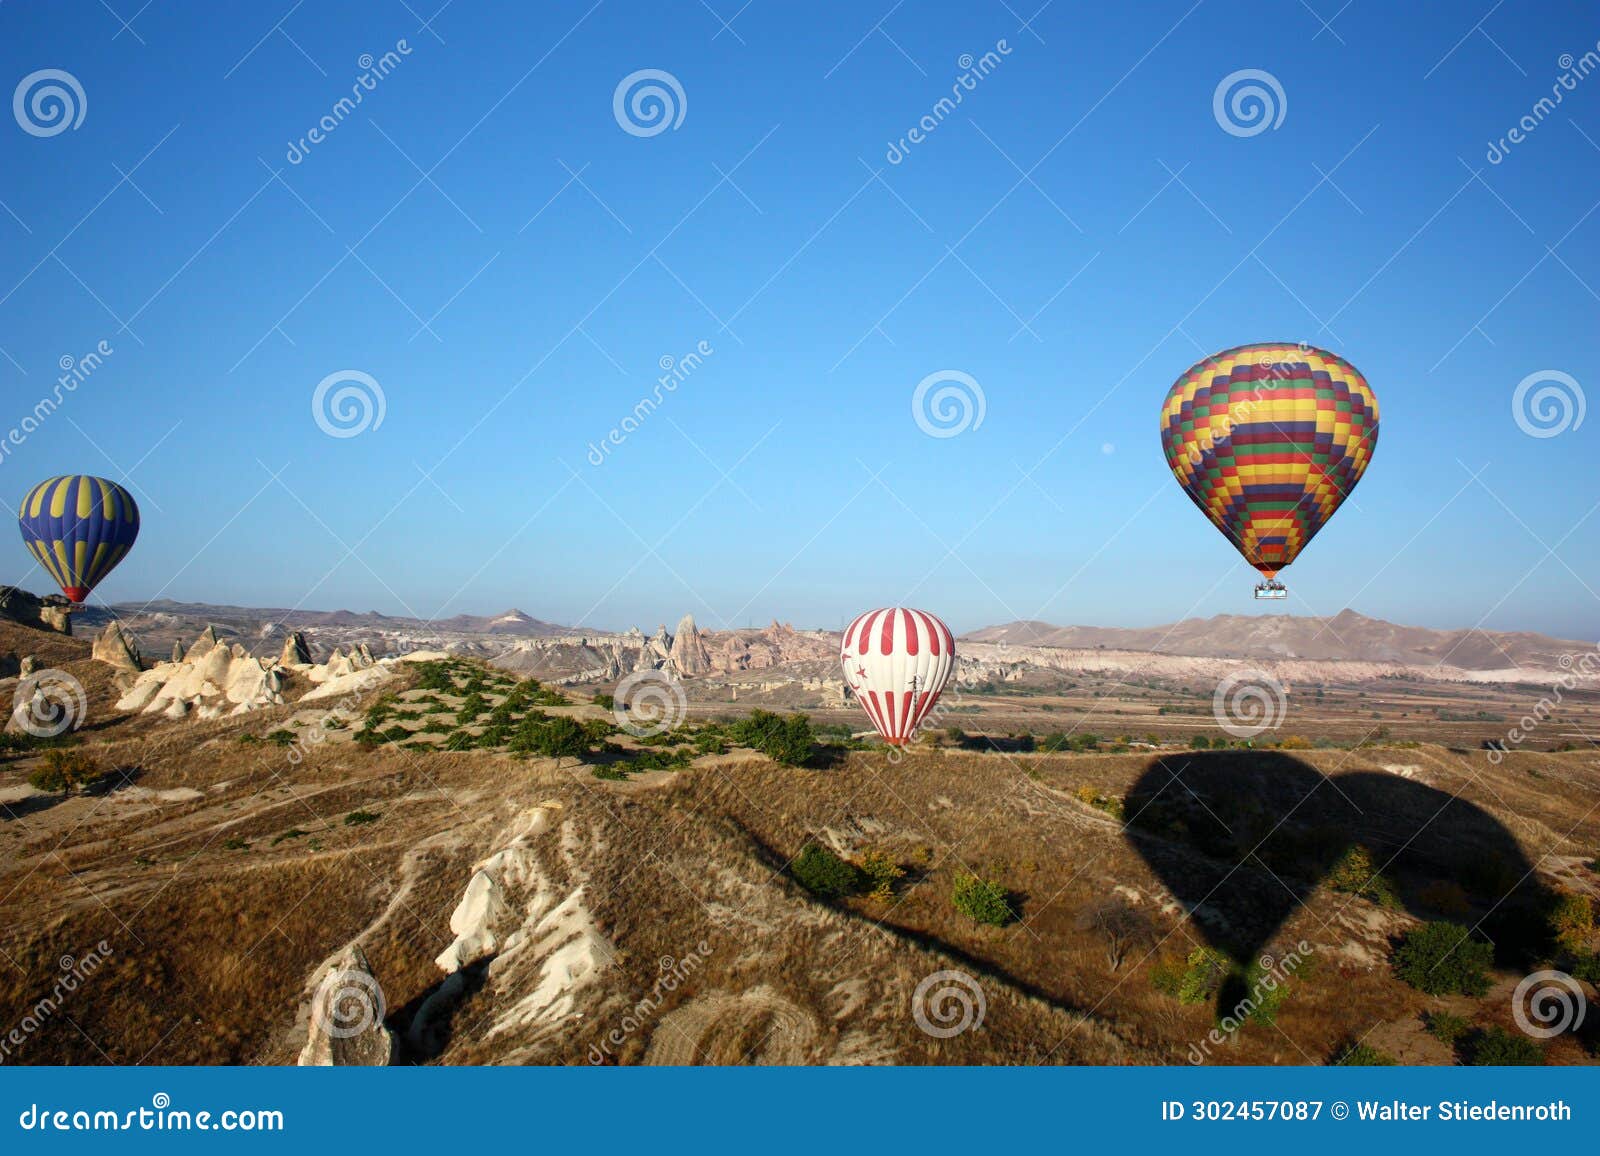 balloon ride over the goreme valley in tÃ¼rkiye